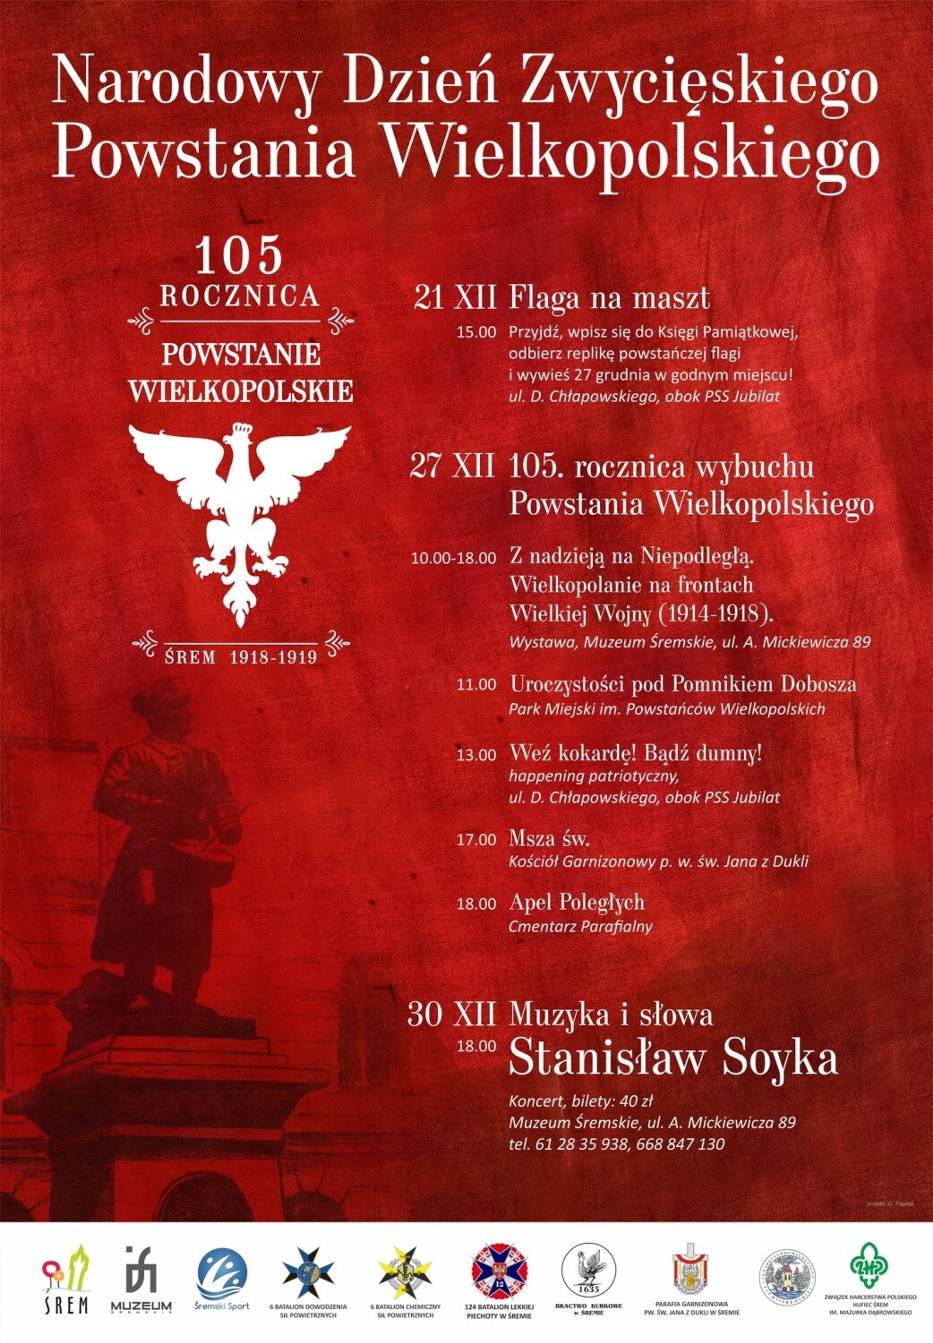 Śrem będzie świętował 105. rocznicę zwycięskiego Powstania Wielkopolskiego. Tegoroczne obchody uświetni koncert wyjątkowego artysty